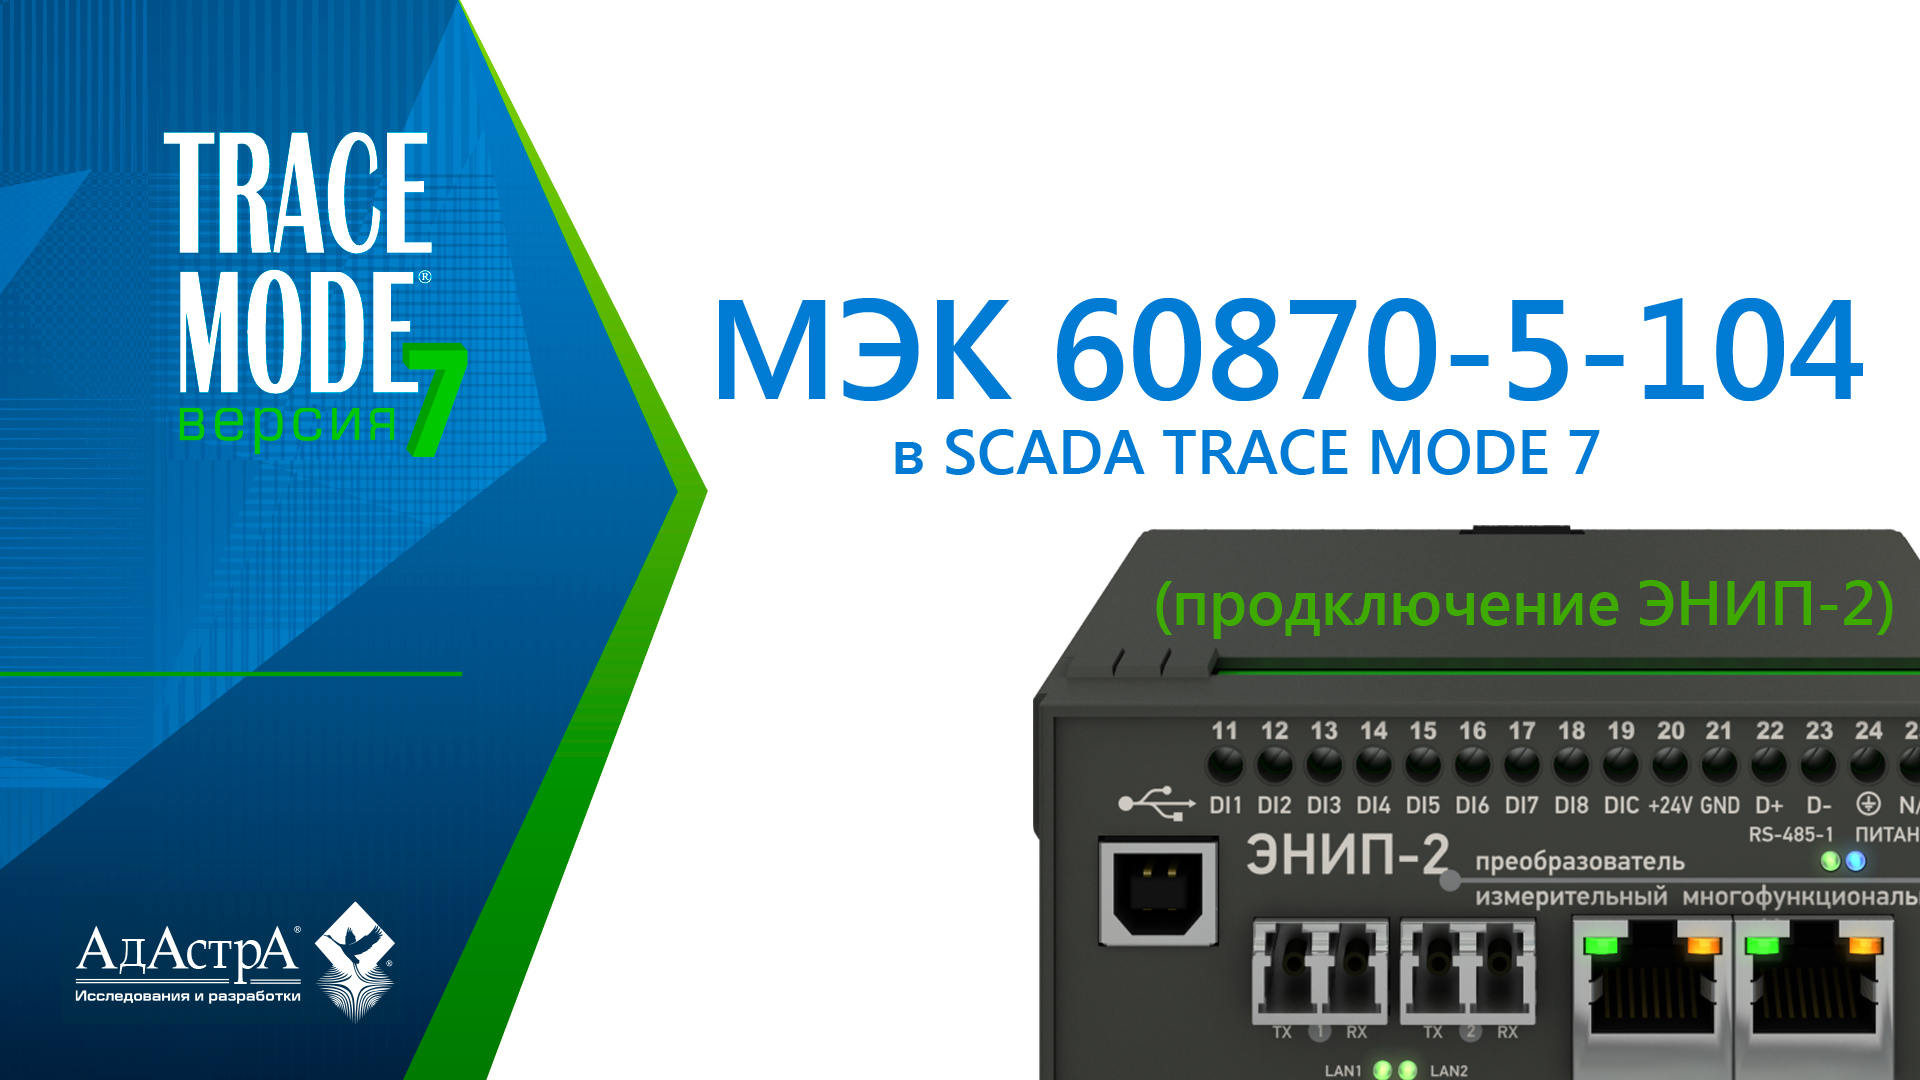 МЭК 60870-5-104: подключение ЭНИП-2 к SCADA TRACE MODE 7